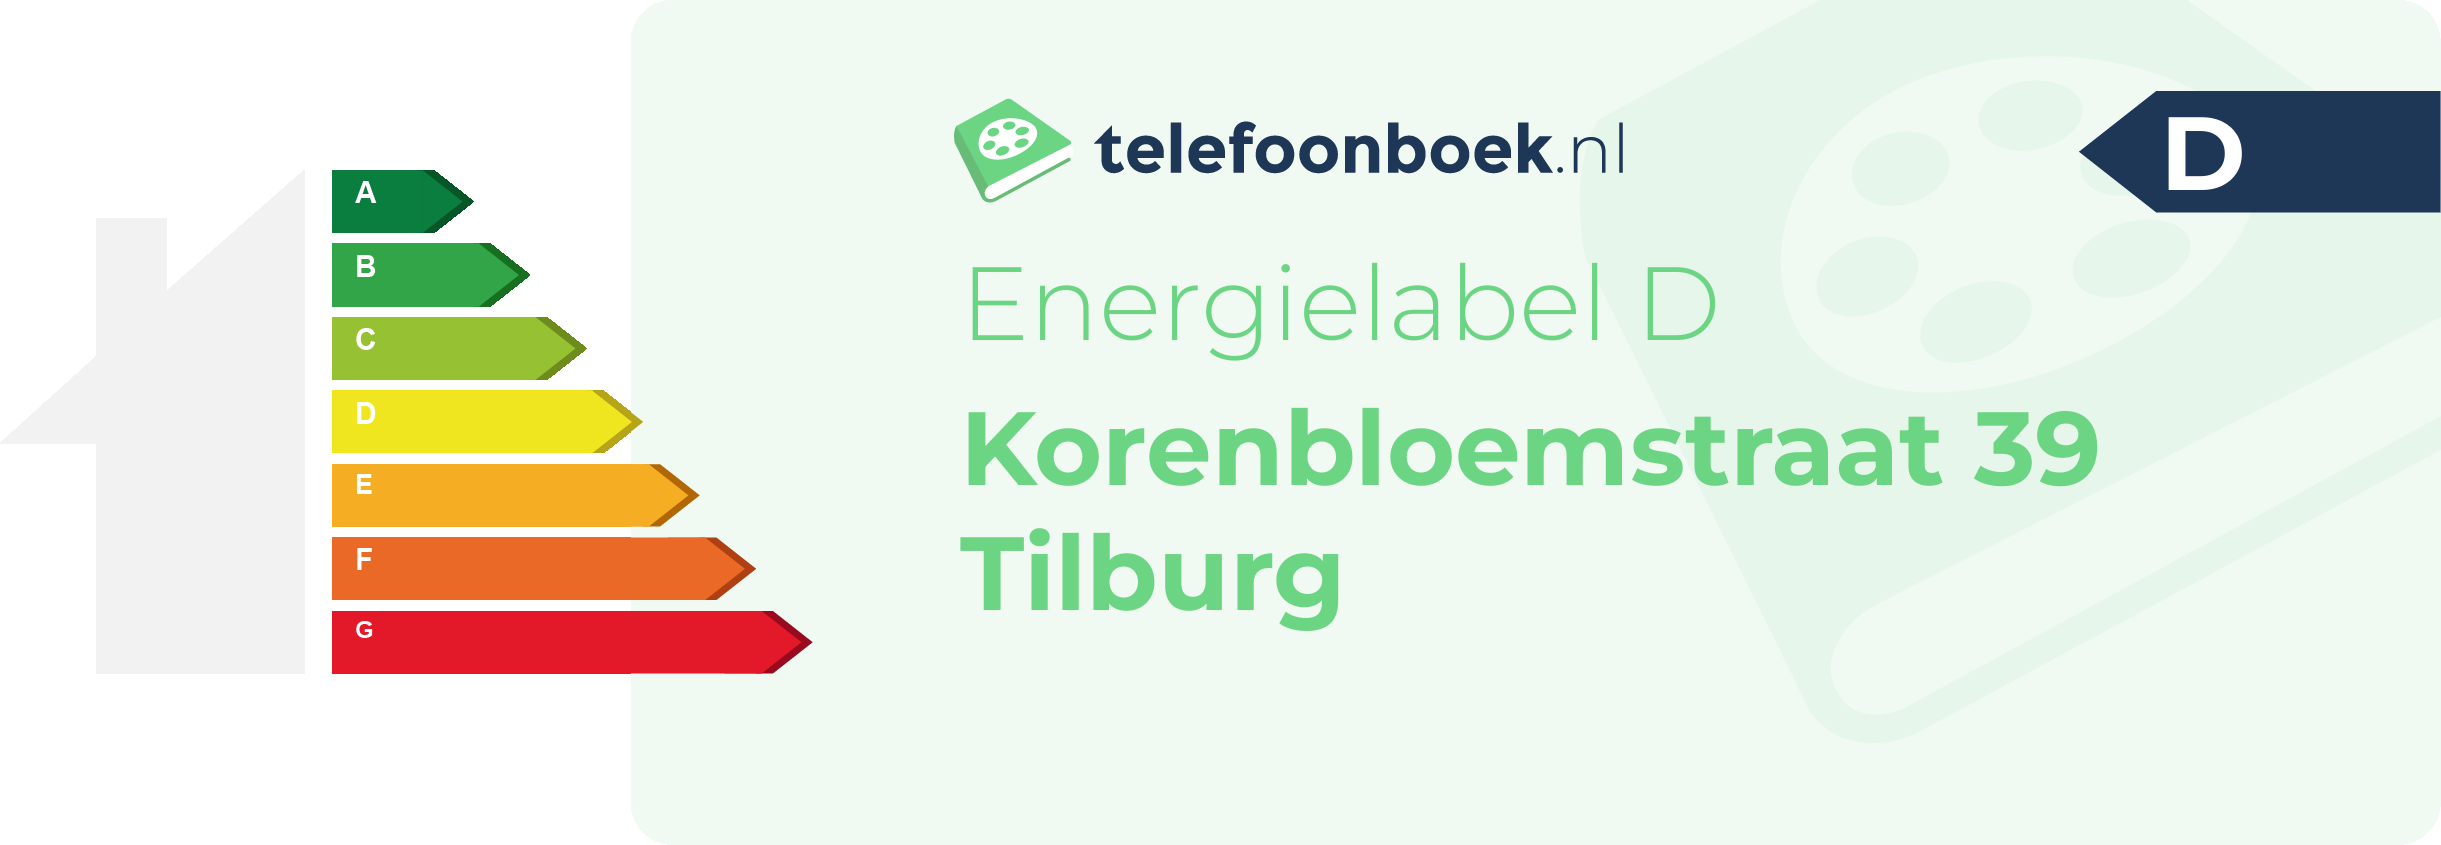 Energielabel Korenbloemstraat 39 Tilburg